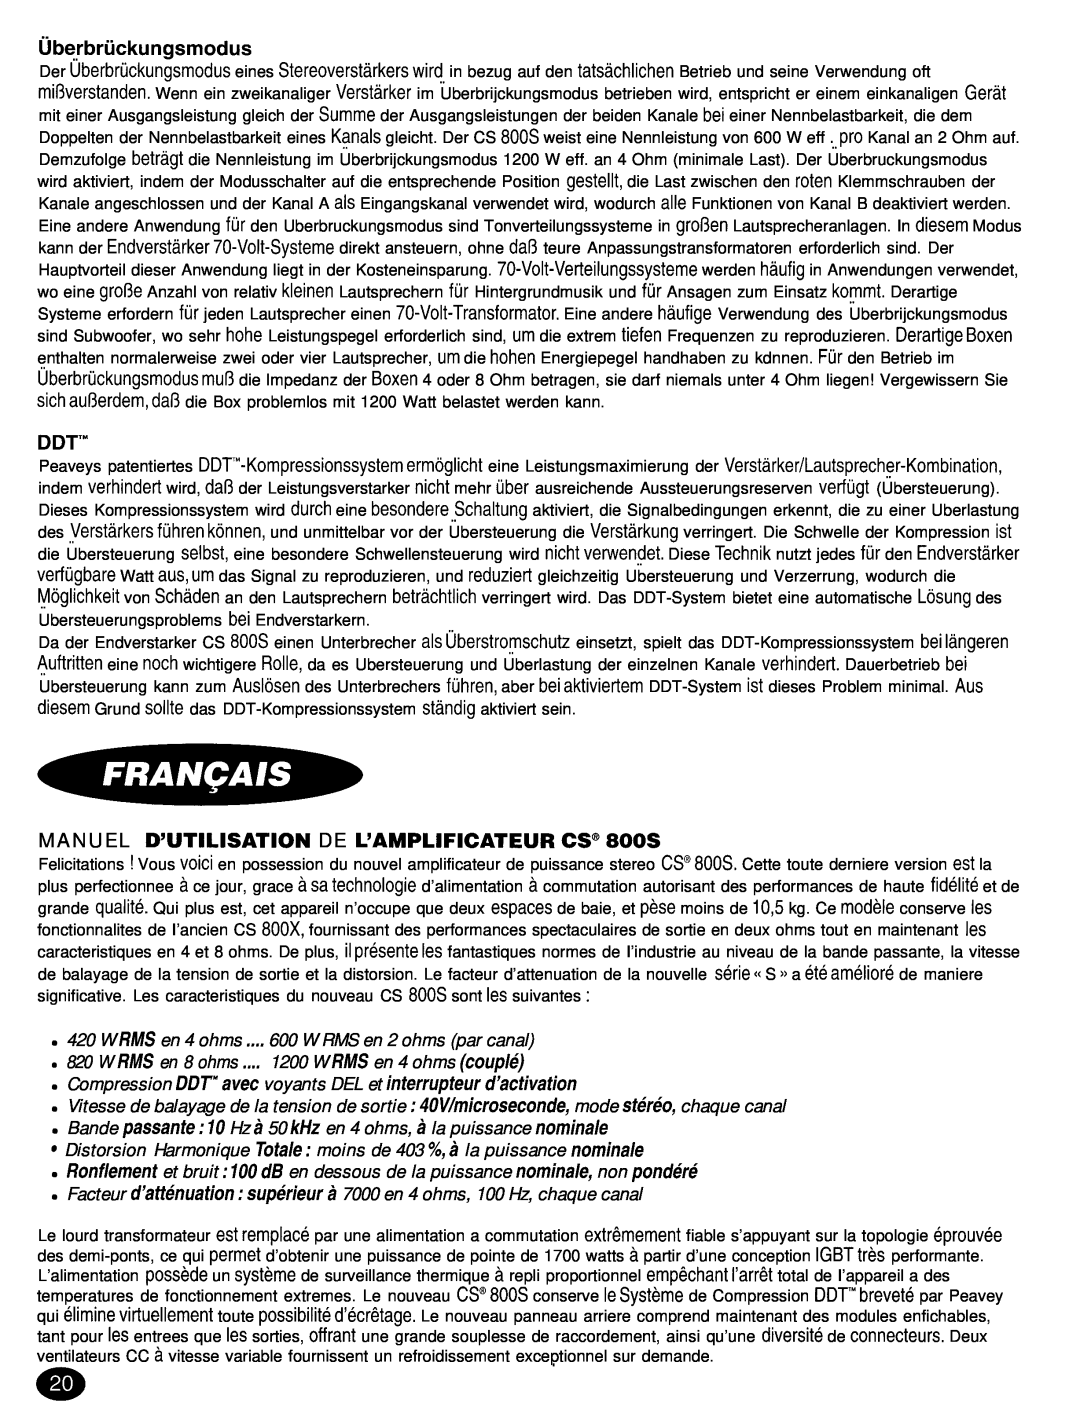 Peavey CS 8OOX manual ubet-briickungsmodus, Ddt’”, MANUEL D’UTILISATION DE L’AMPLIFICATEUR CS” 800s 